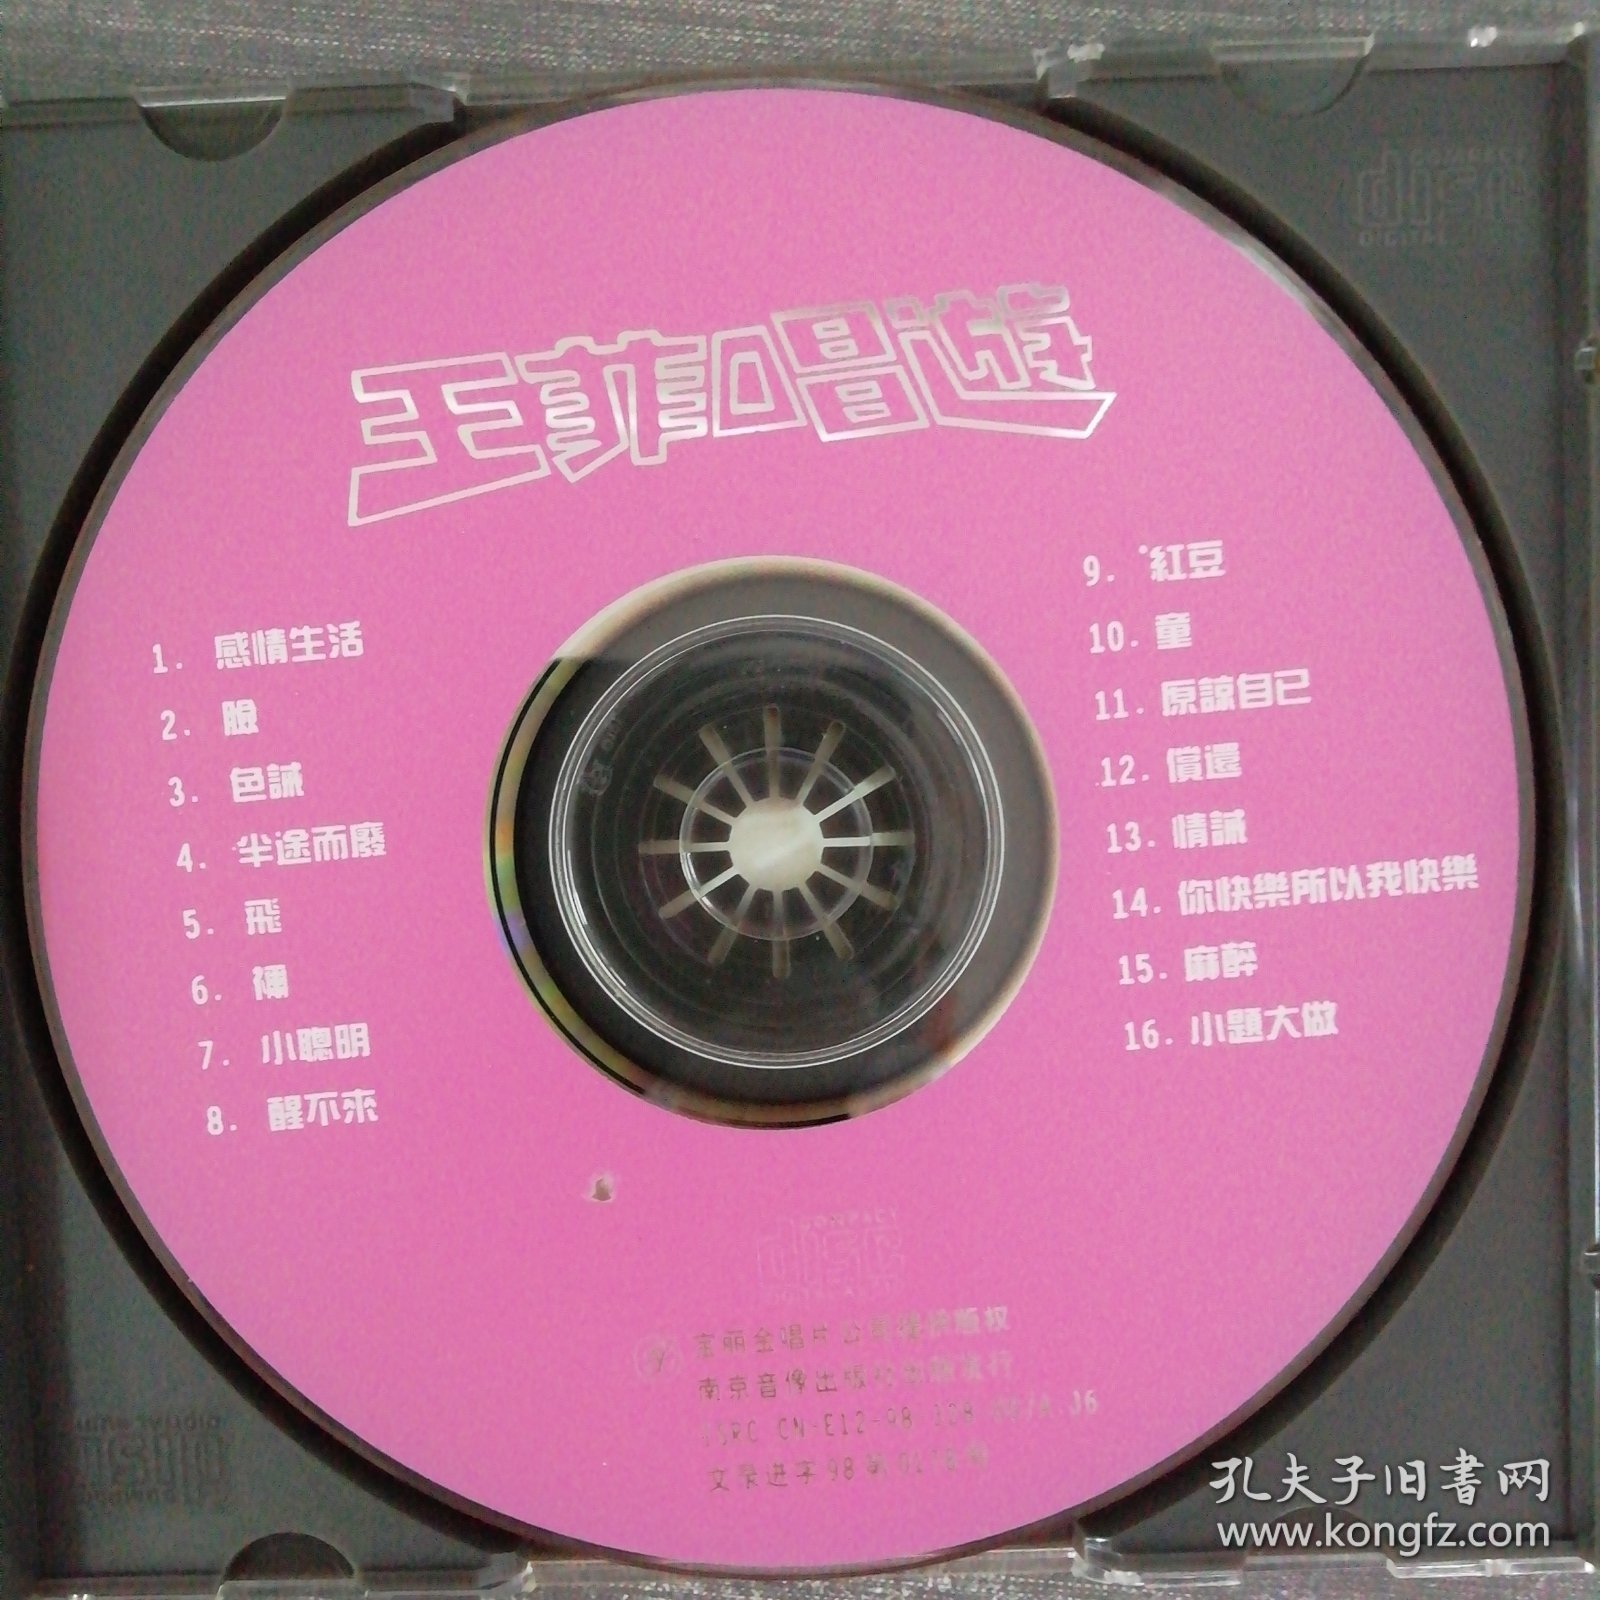 613光盘CD：王菲唱游 一张光盘盒装